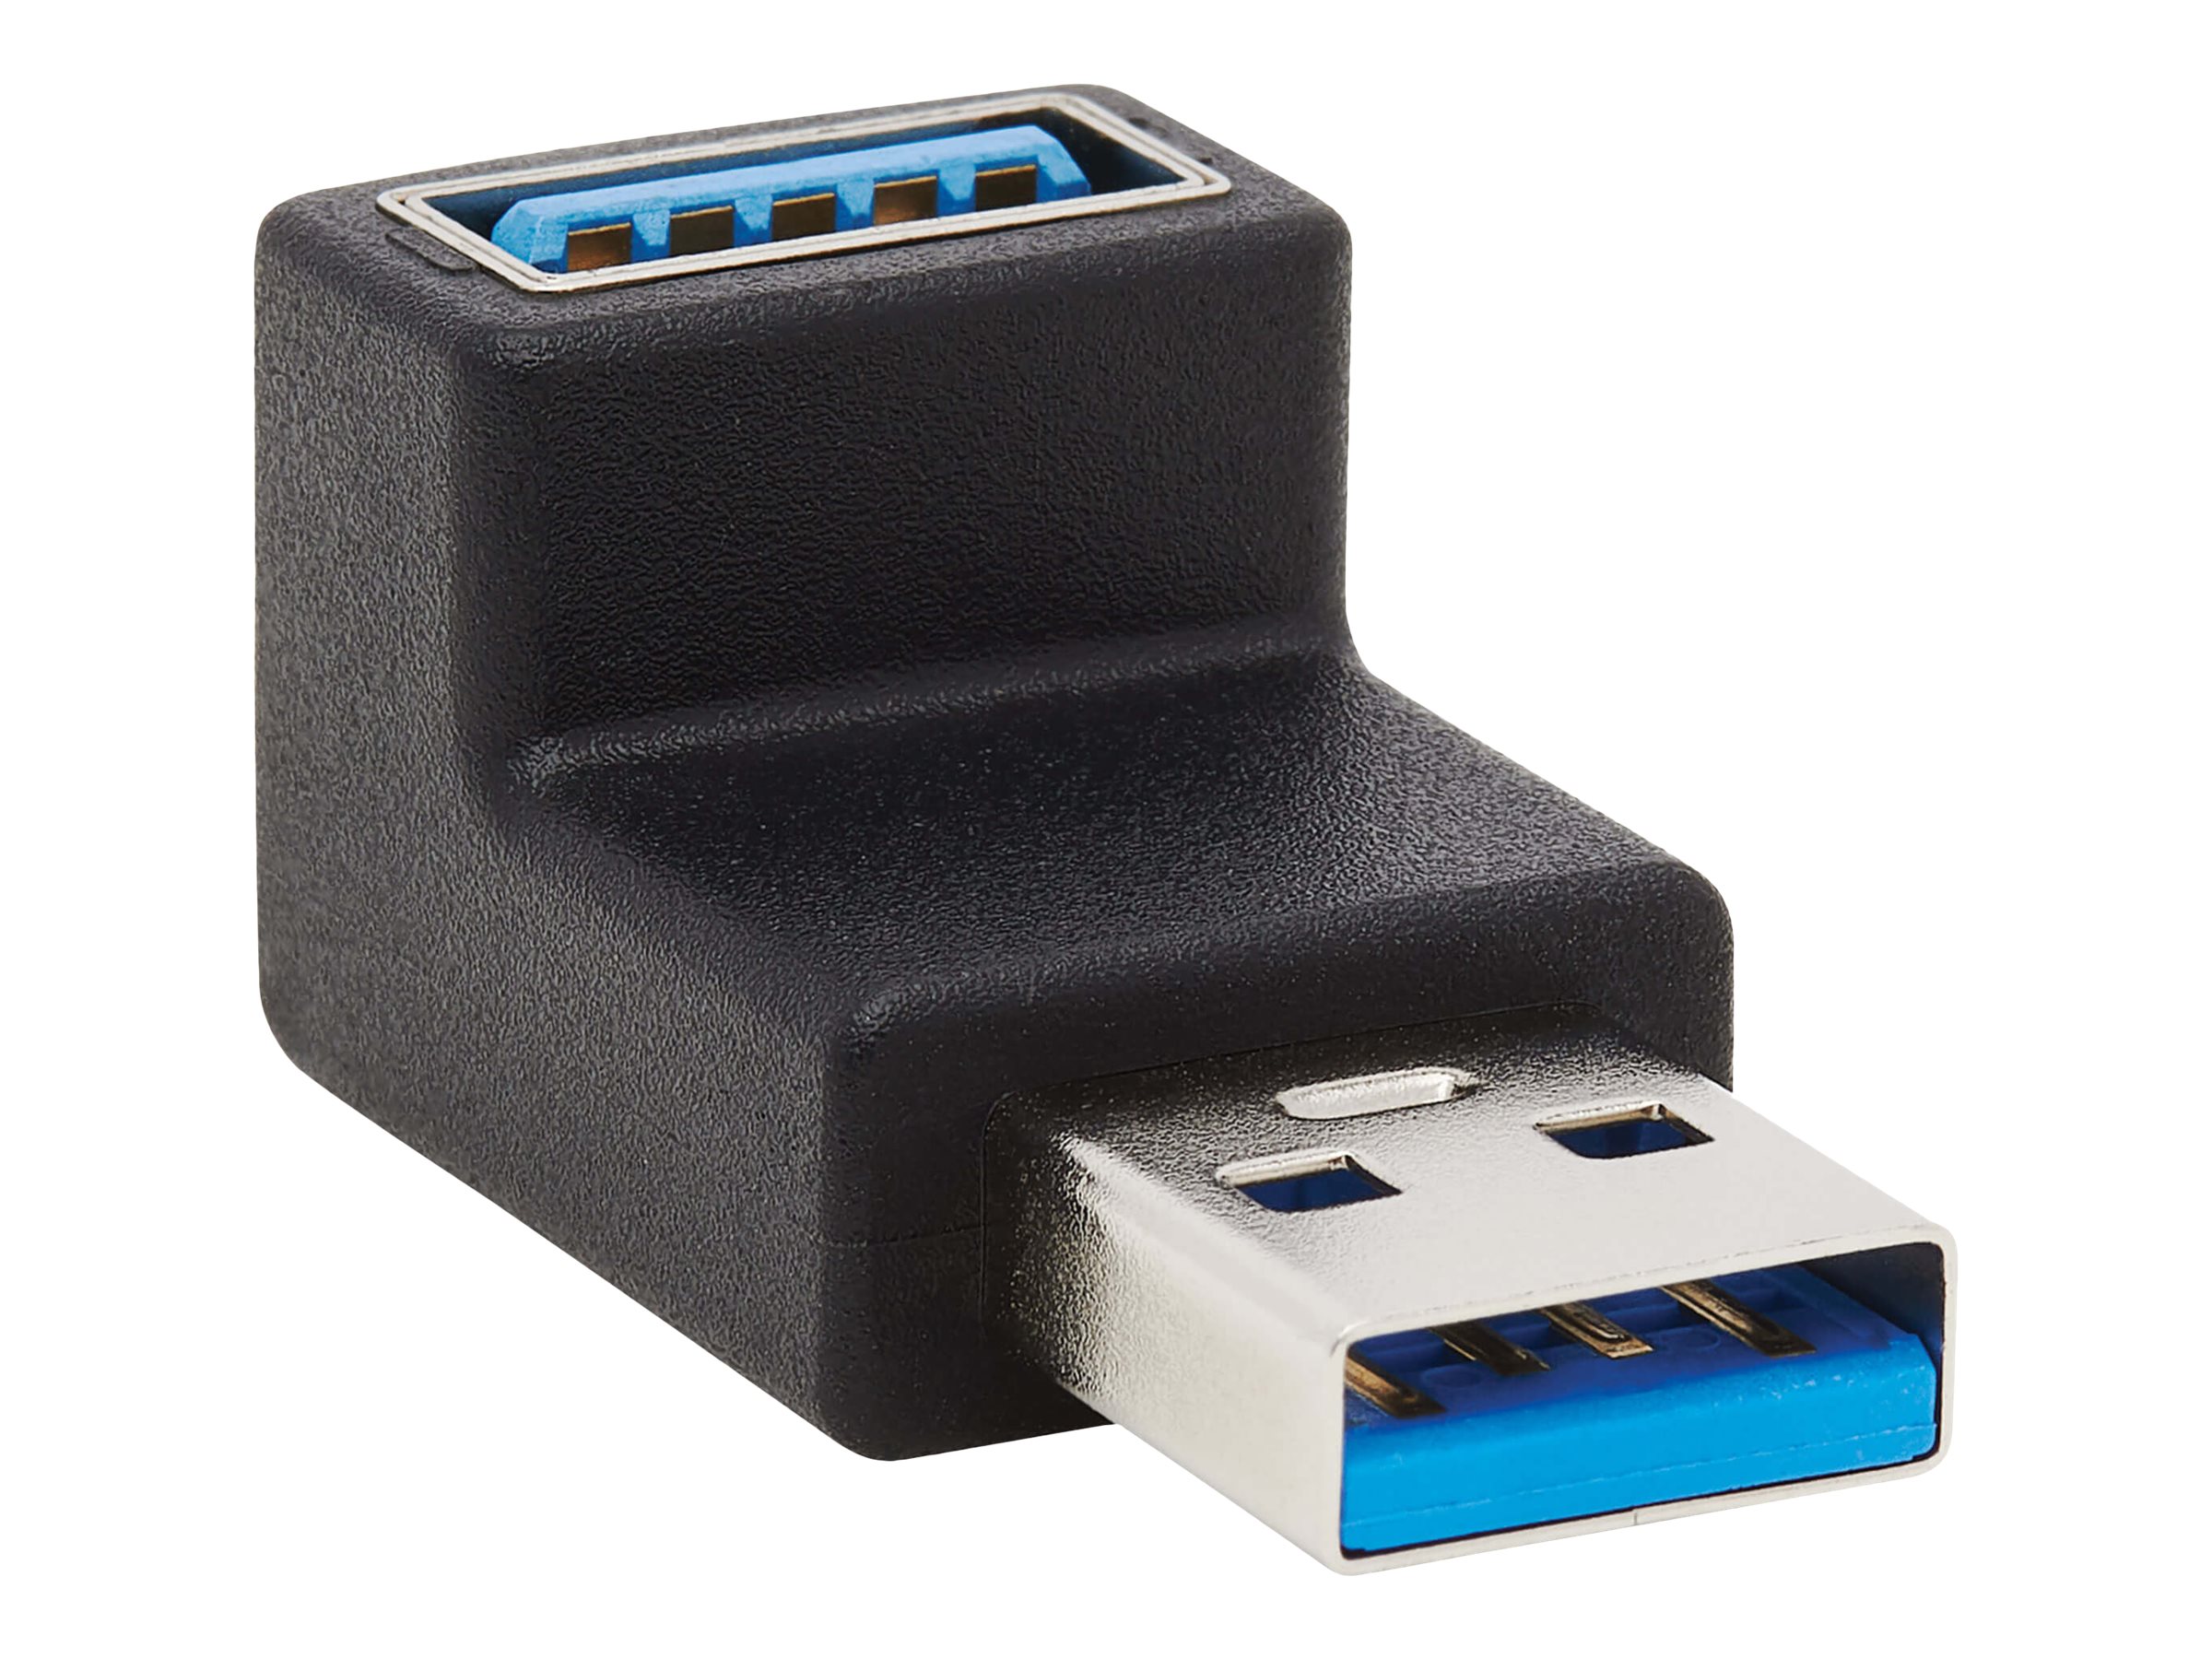 Tripp Lite USB 3.0 SuperSpeed Adapter - USB-A to USB-A, M/F, Up Angle, Black - USB-Adapter - USB Typ A (W) nach oben angewinkelt